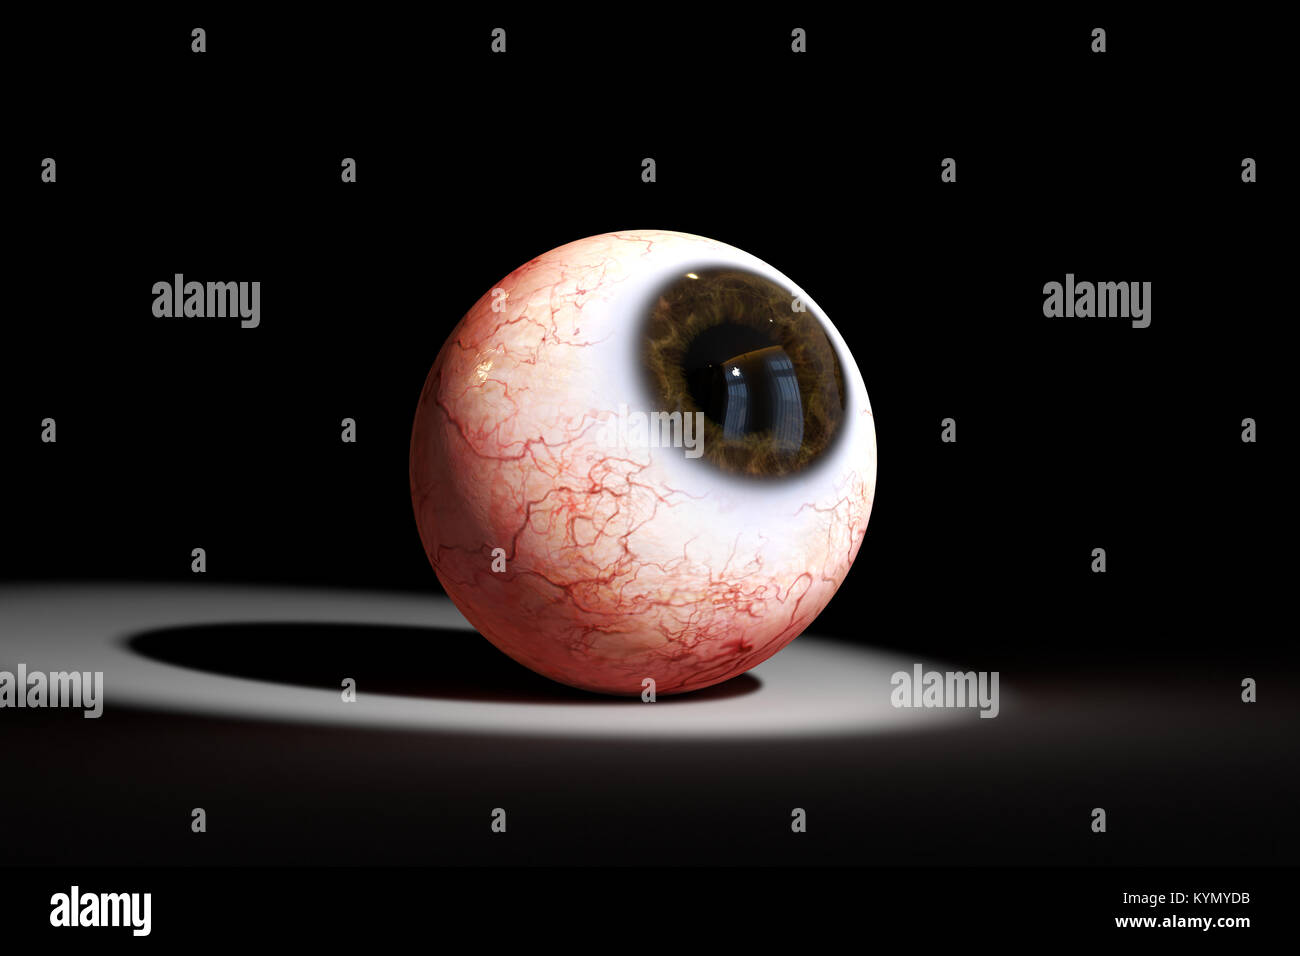 El ojo humano realistas con iris marrón mirando a un foco (Ilustración 3d) Foto de stock